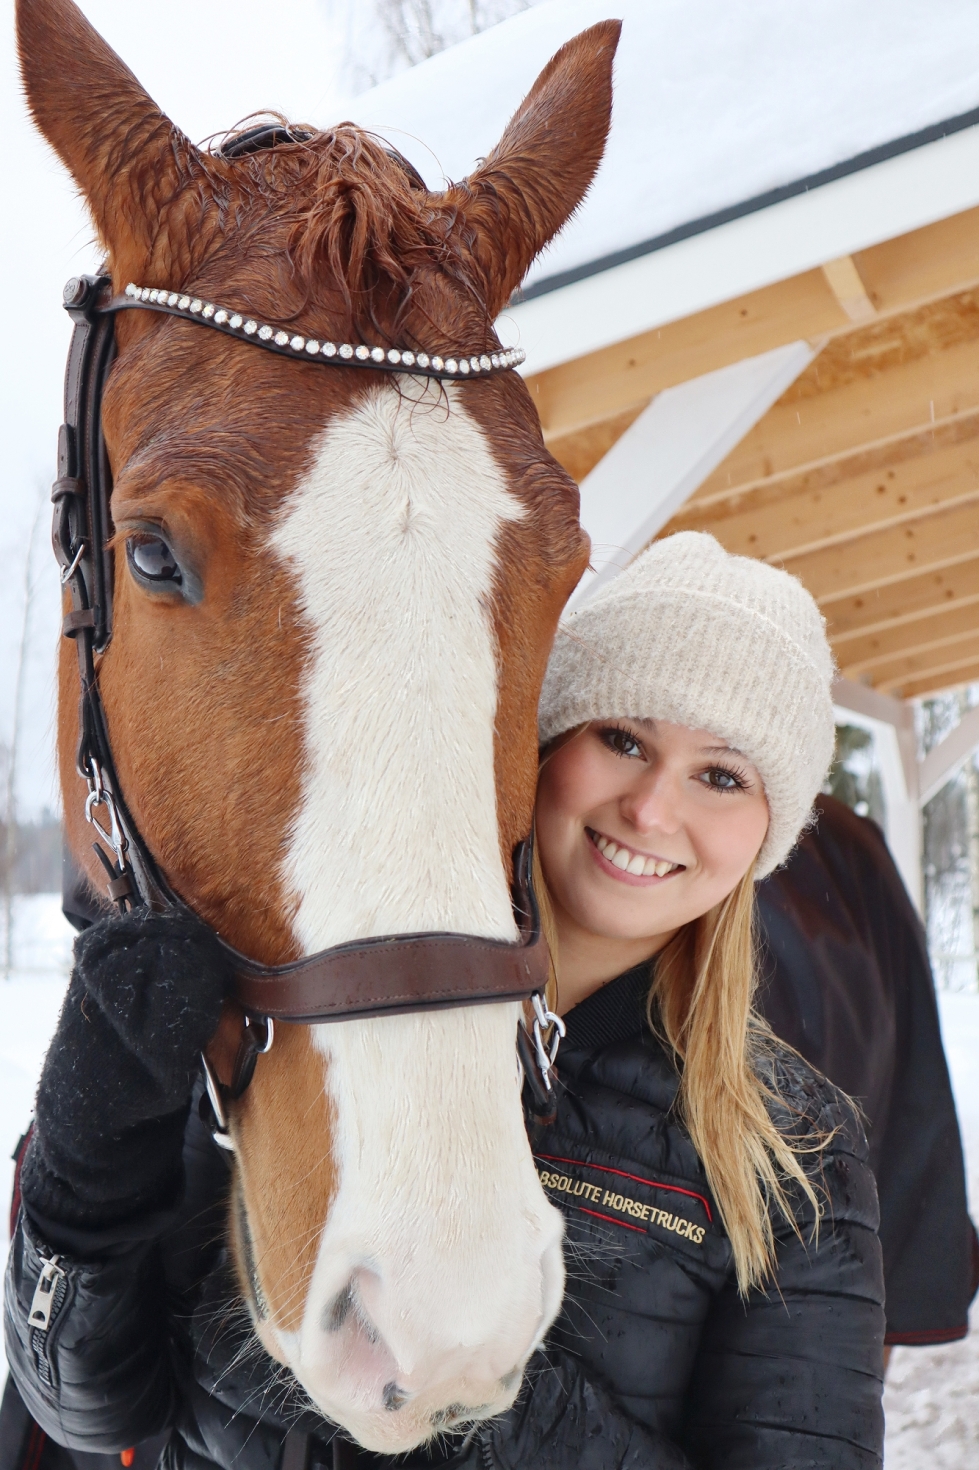 16-vuotias joensuulaislähtöinen esteratsastaja Roosa Kuivalainen on muuttanut harrastuksen perässä Hämeenlinnaan. "Täällä Pohjois-Karjalassa ei ole yhtä hyviä mahdollisuuksia harrastaa, kun kisamatkat ovat pitkiä. Se on hevosellekin raskasta."